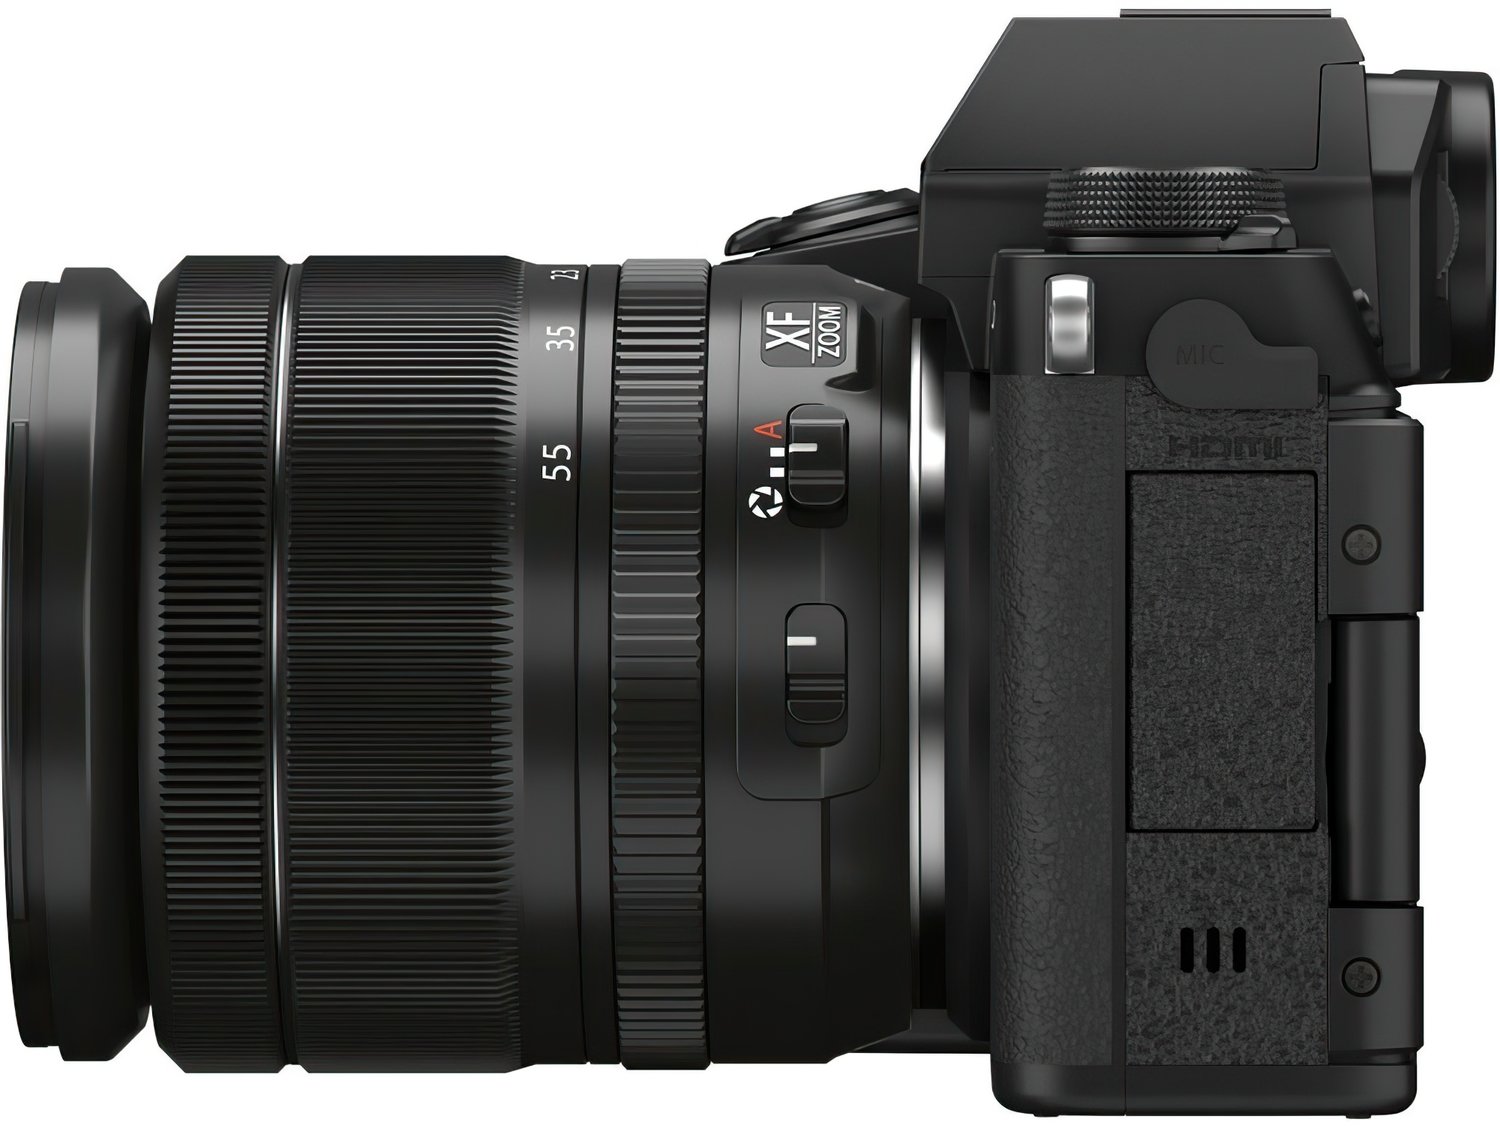 Фотоаппарат Fujifilm X-S10 Kit Fujifilm XF 18-55mm F2.8-4 R LM OIS, черный